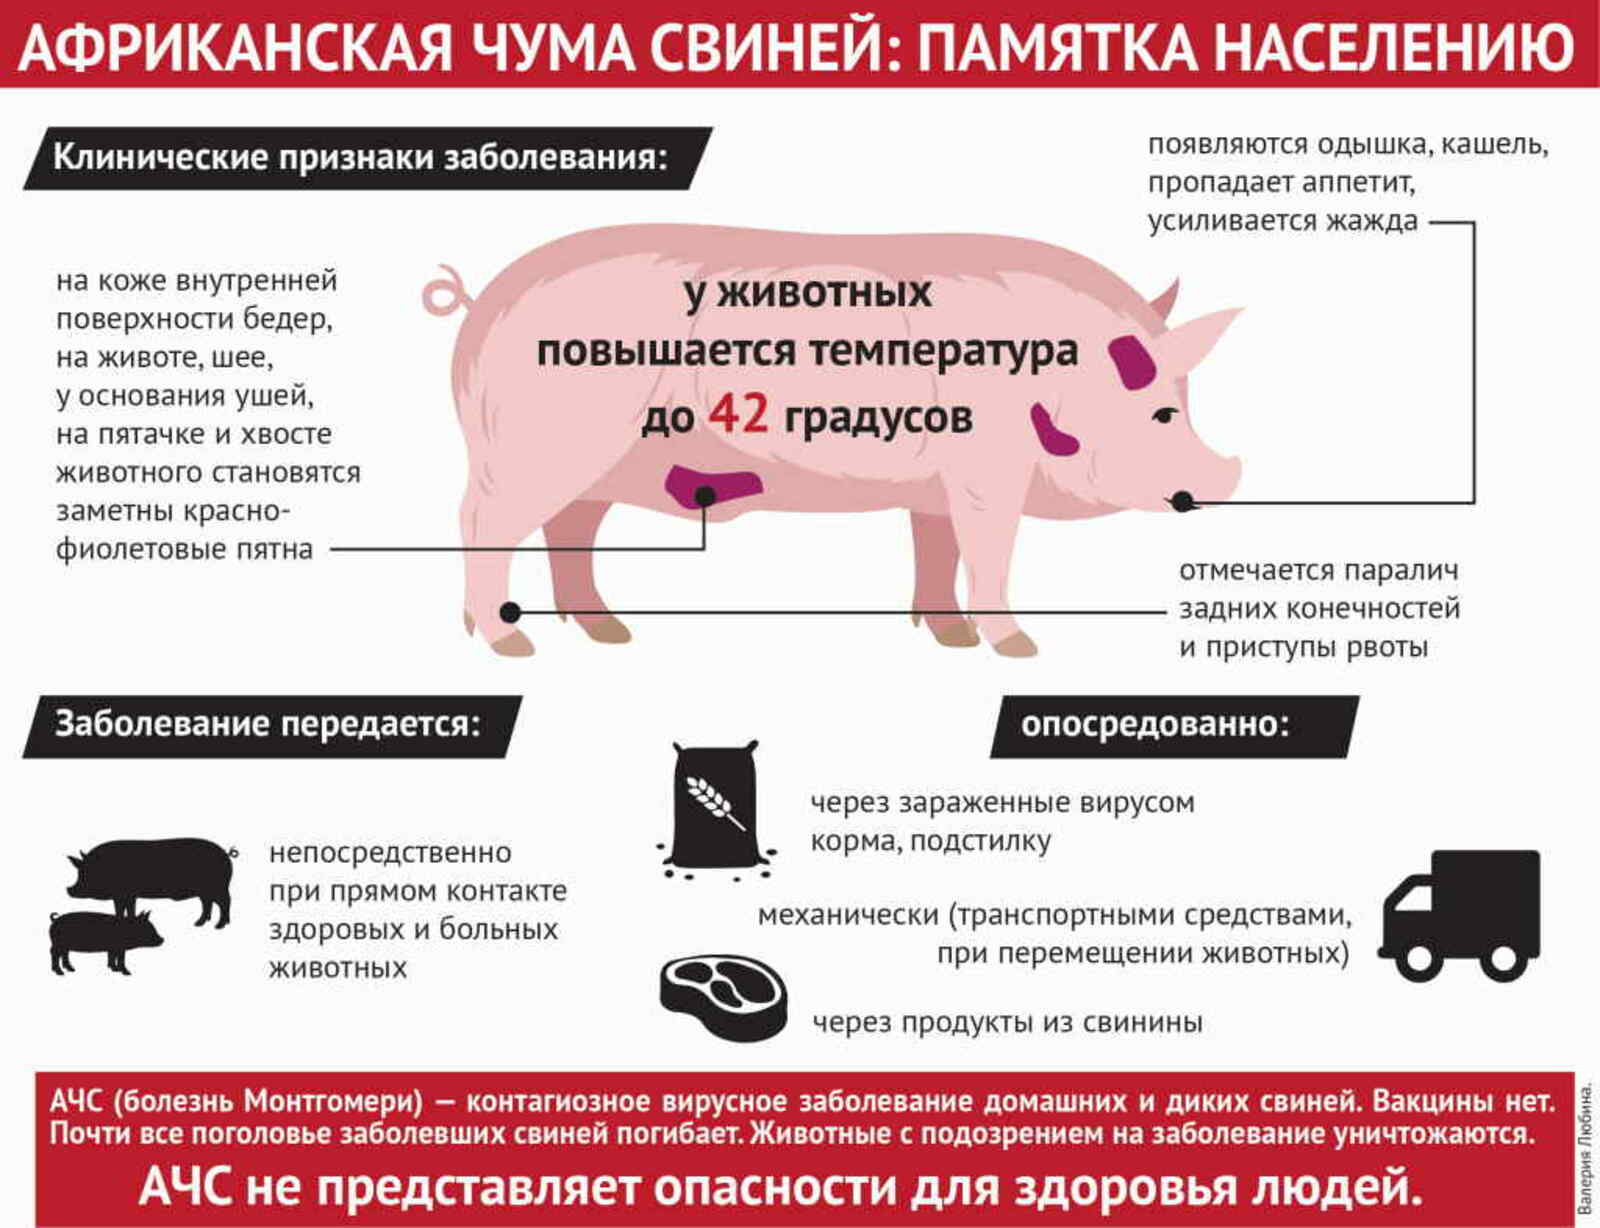 В Башкирии нашли африканскую чуму свиней. Что важно про неё знать